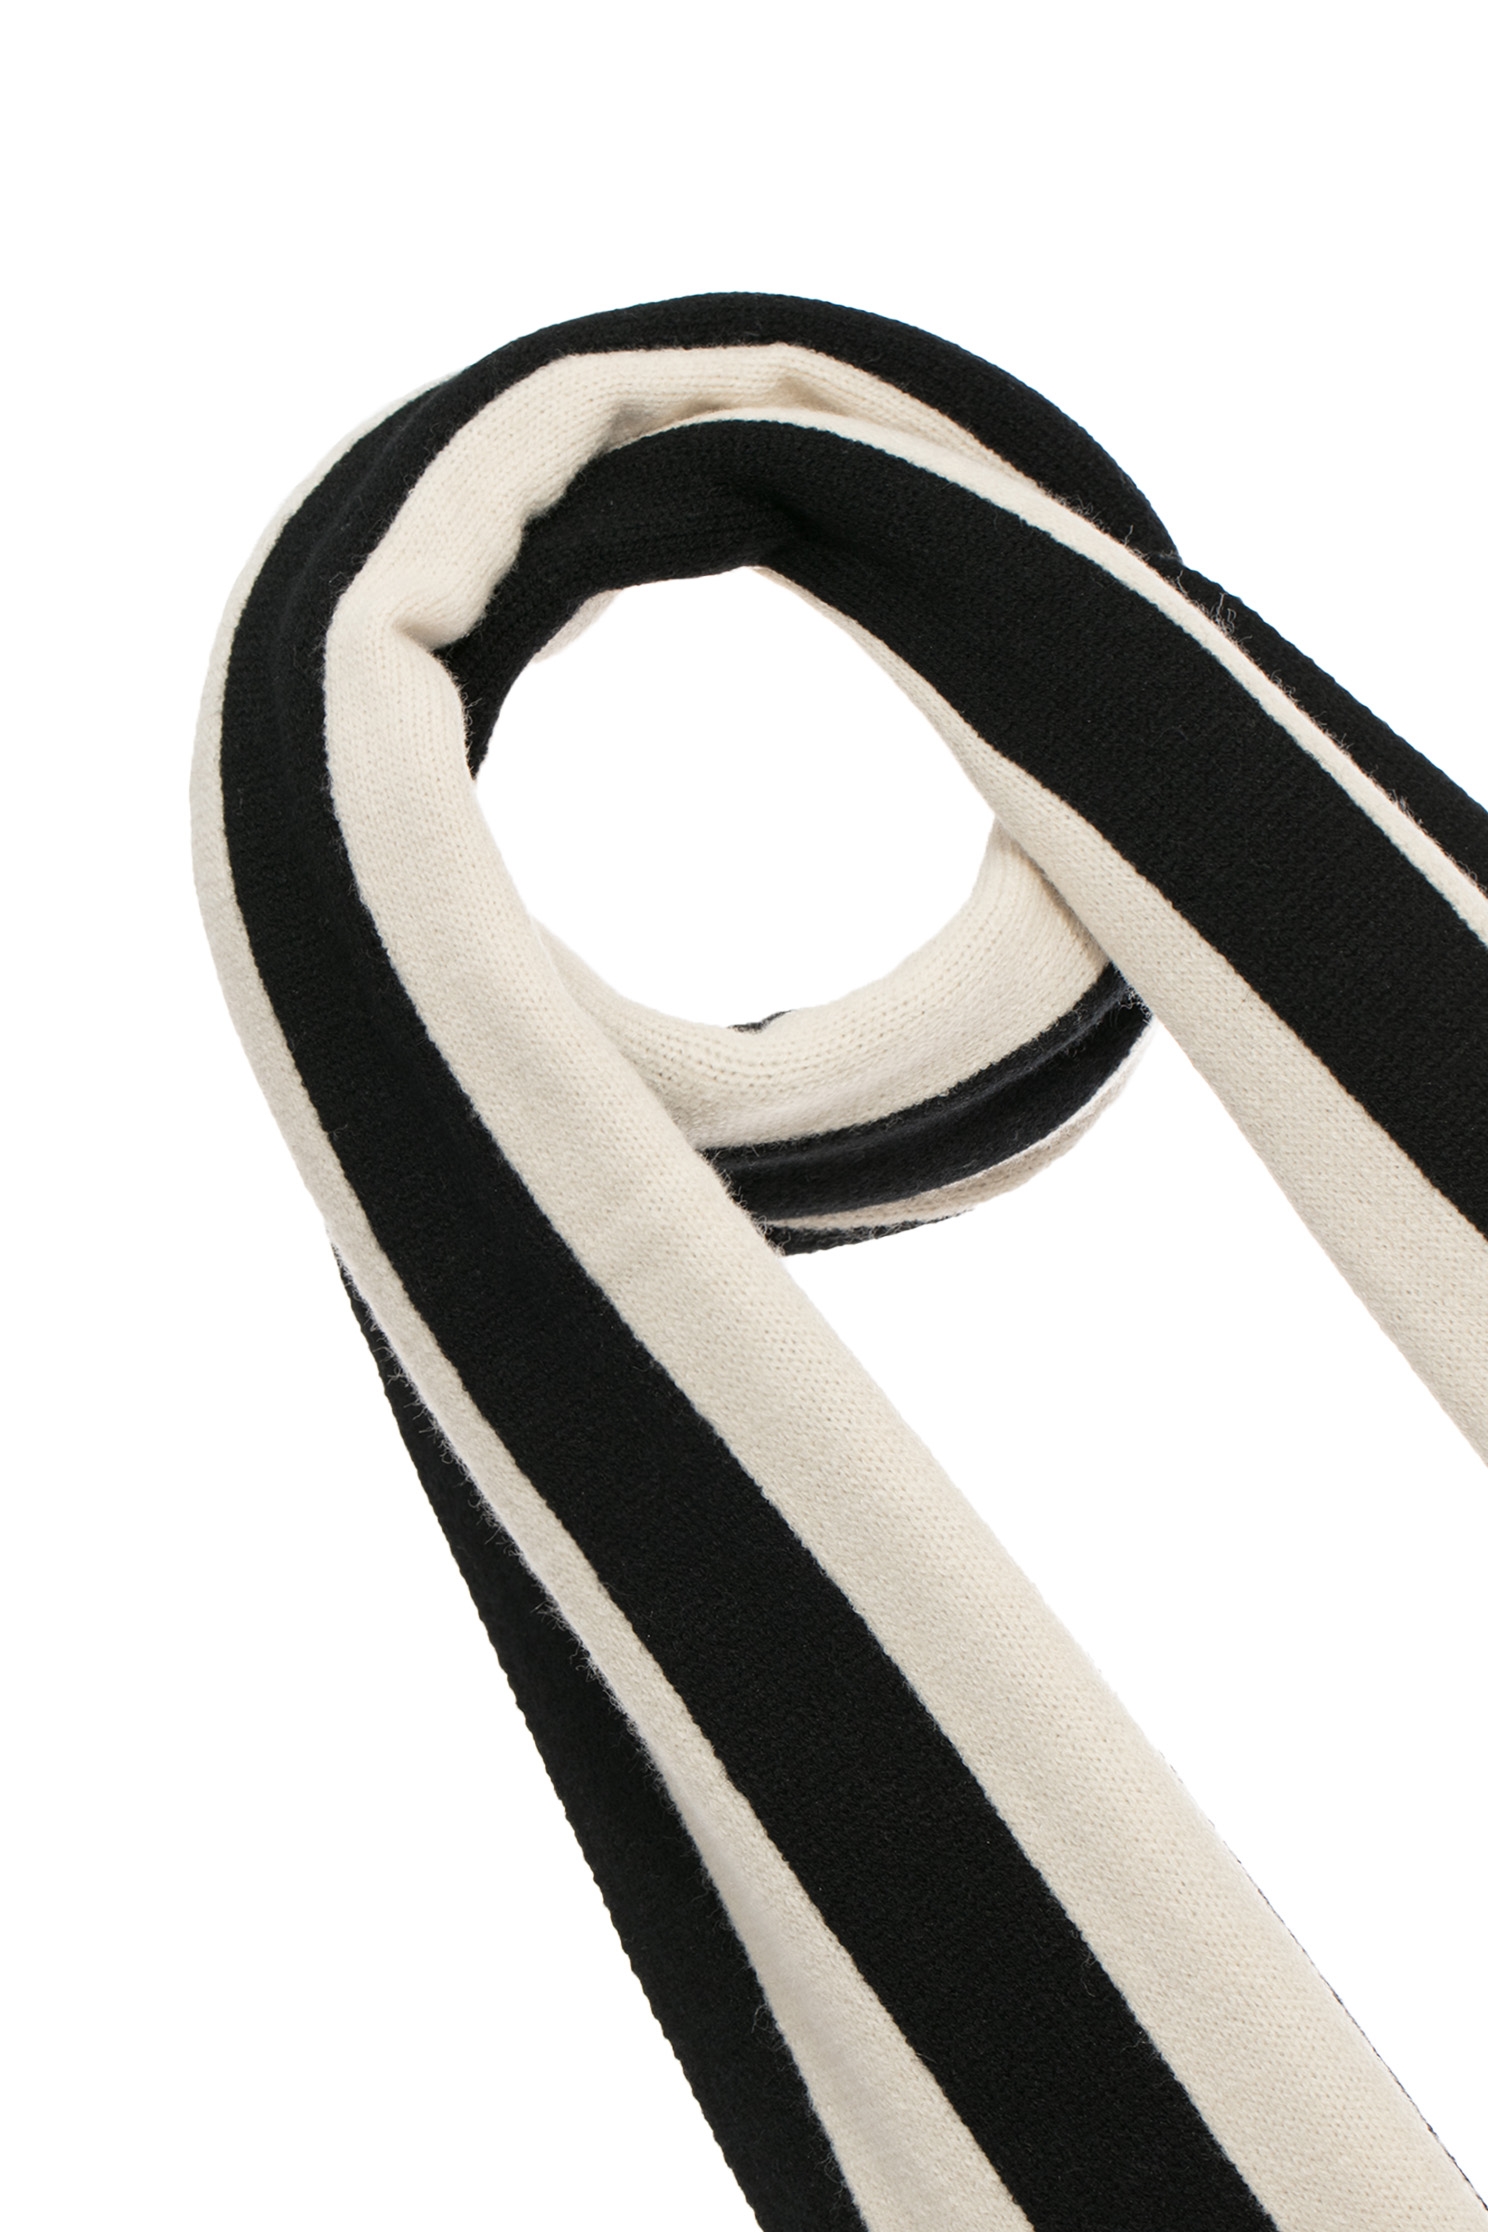 經典黑白條紋圍巾經典黑白條紋圍巾,圍巾,春夏穿搭,條紋